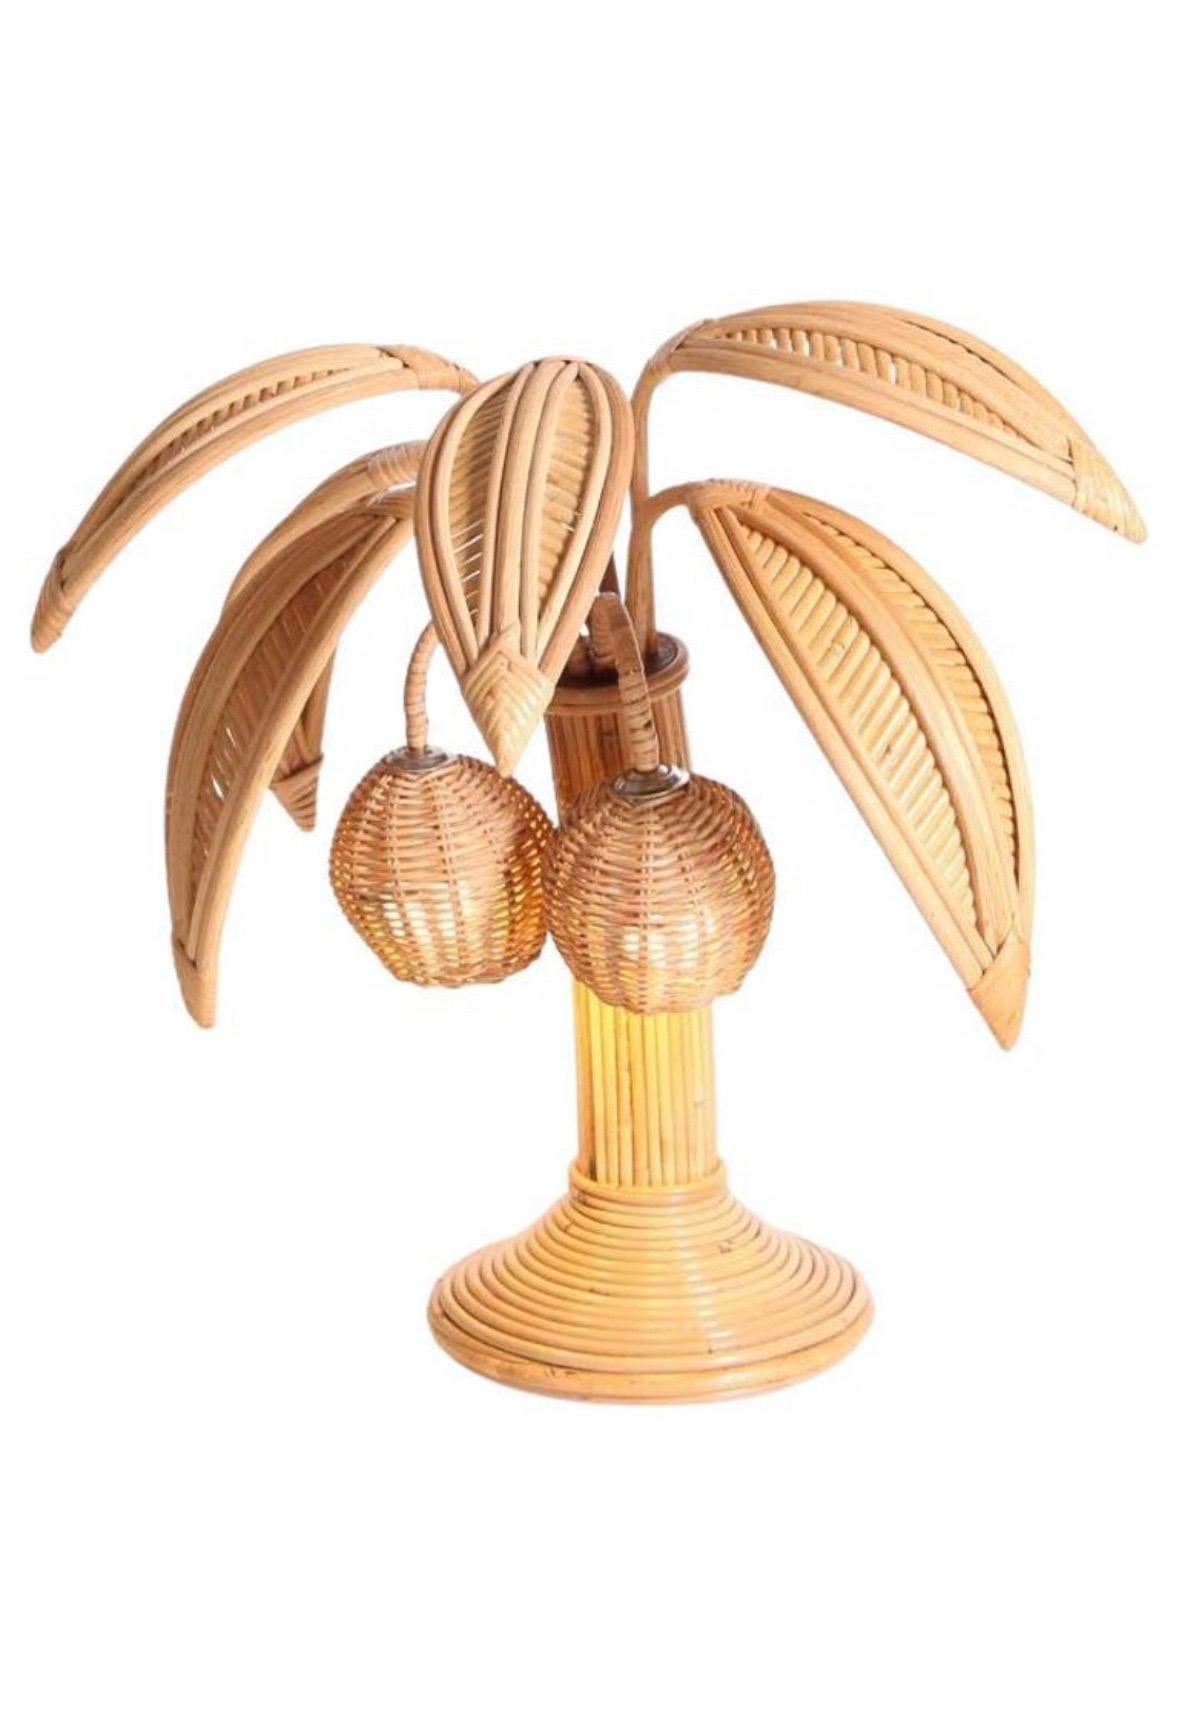 Jolie paire de lampes en rotin avec des palmes réglables et des lumières dans les noix de coco.
Très décoratives, ces lampes sont une promesse de vacances et de soleil.
Ils sont le résultat d'un travail de grande qualité, tous faits à la main !